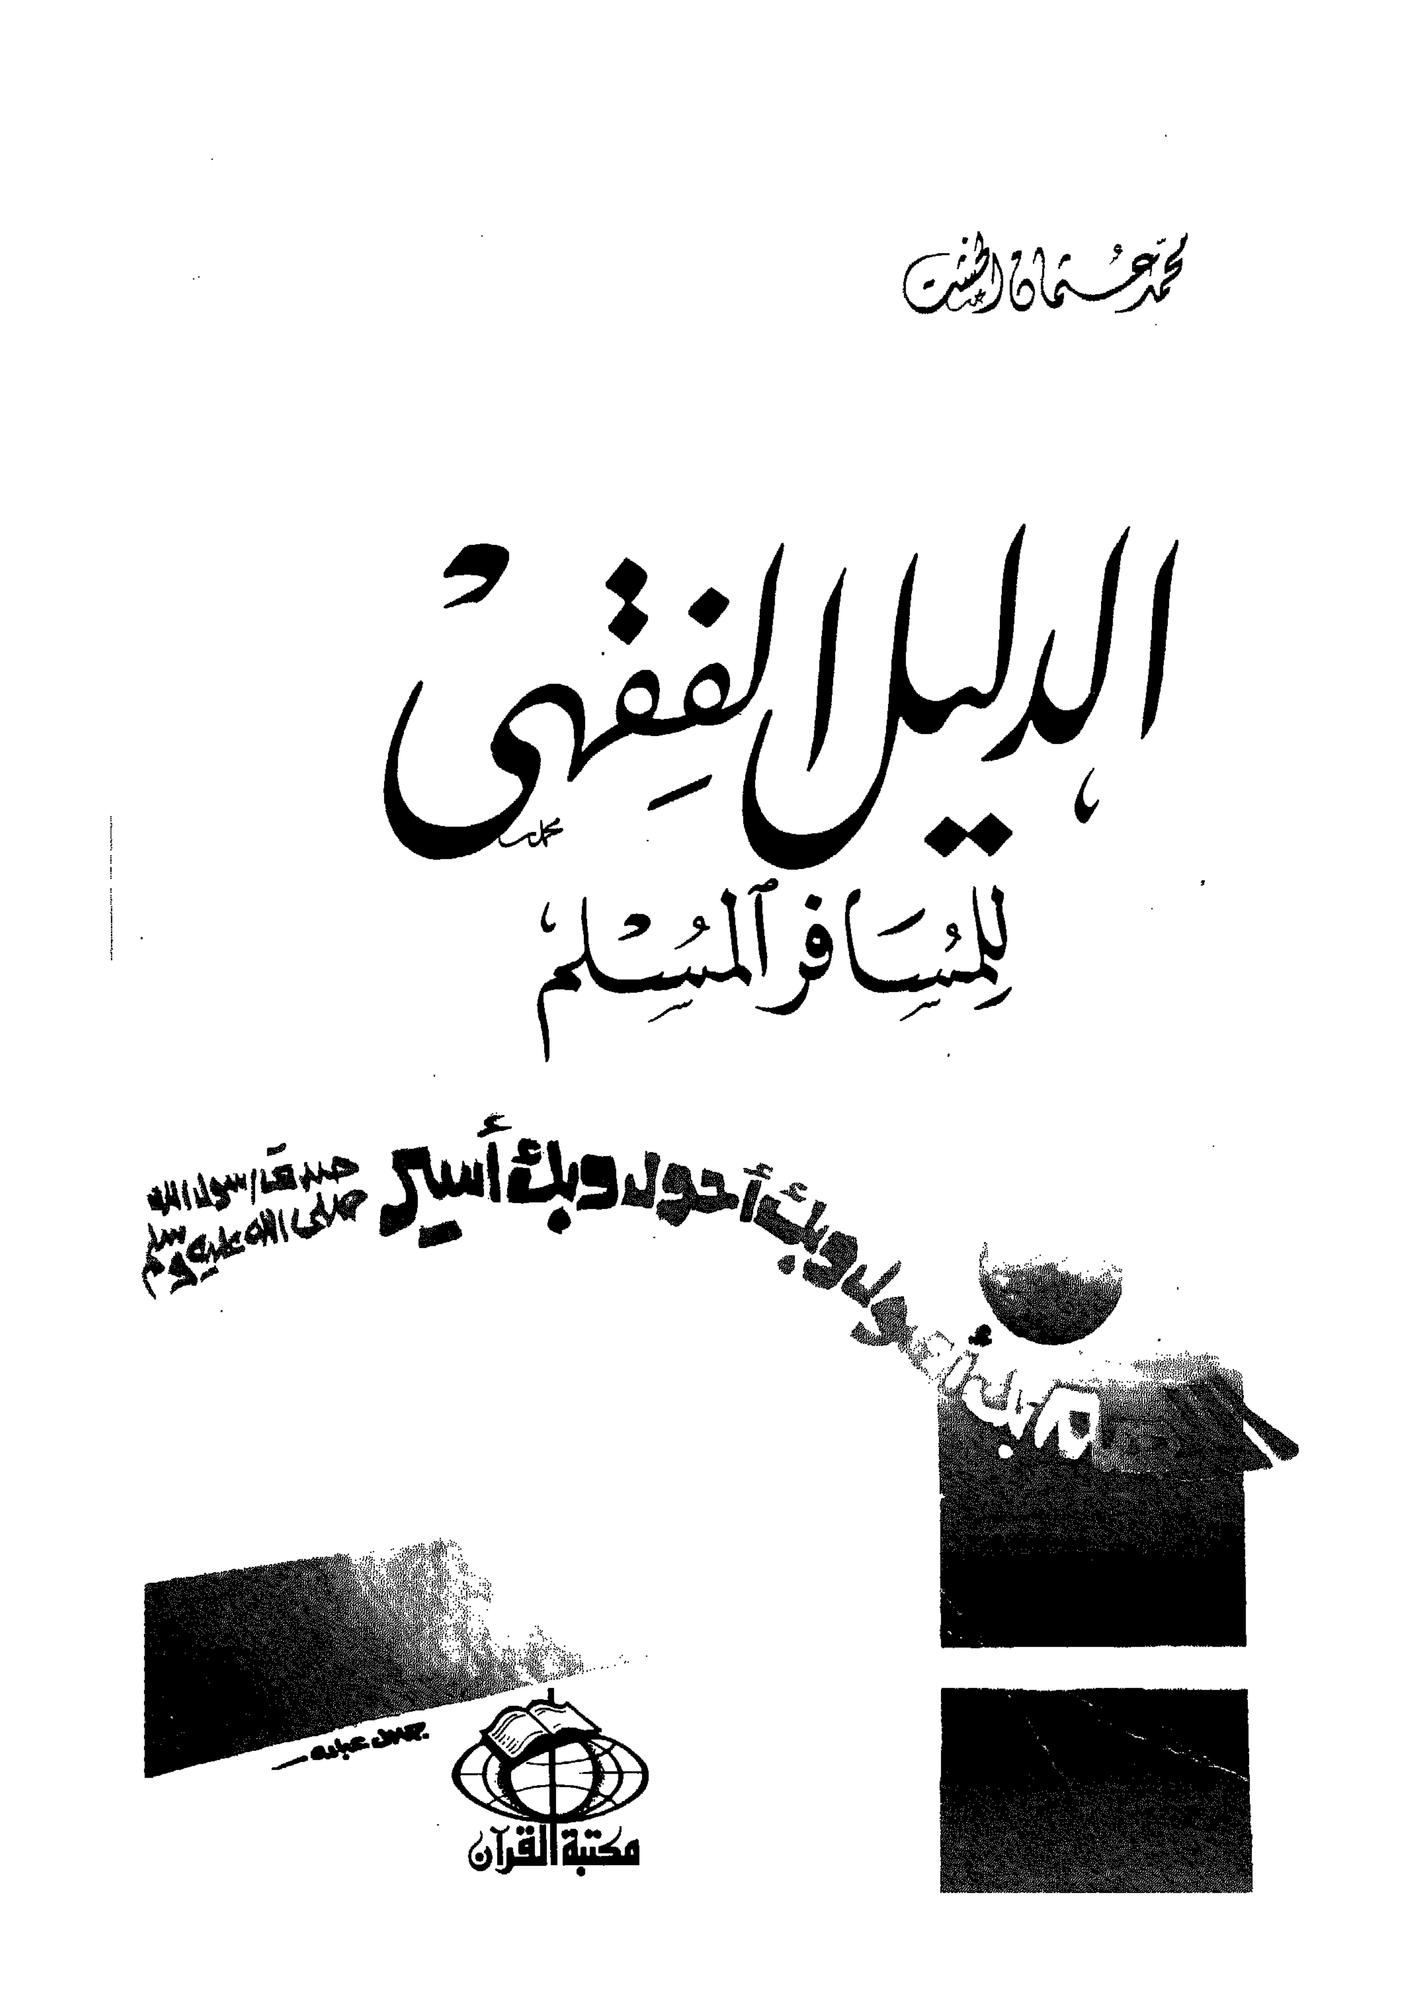 الدليل الفقهى للمسافر المسلم - محمد عثمان الخشت